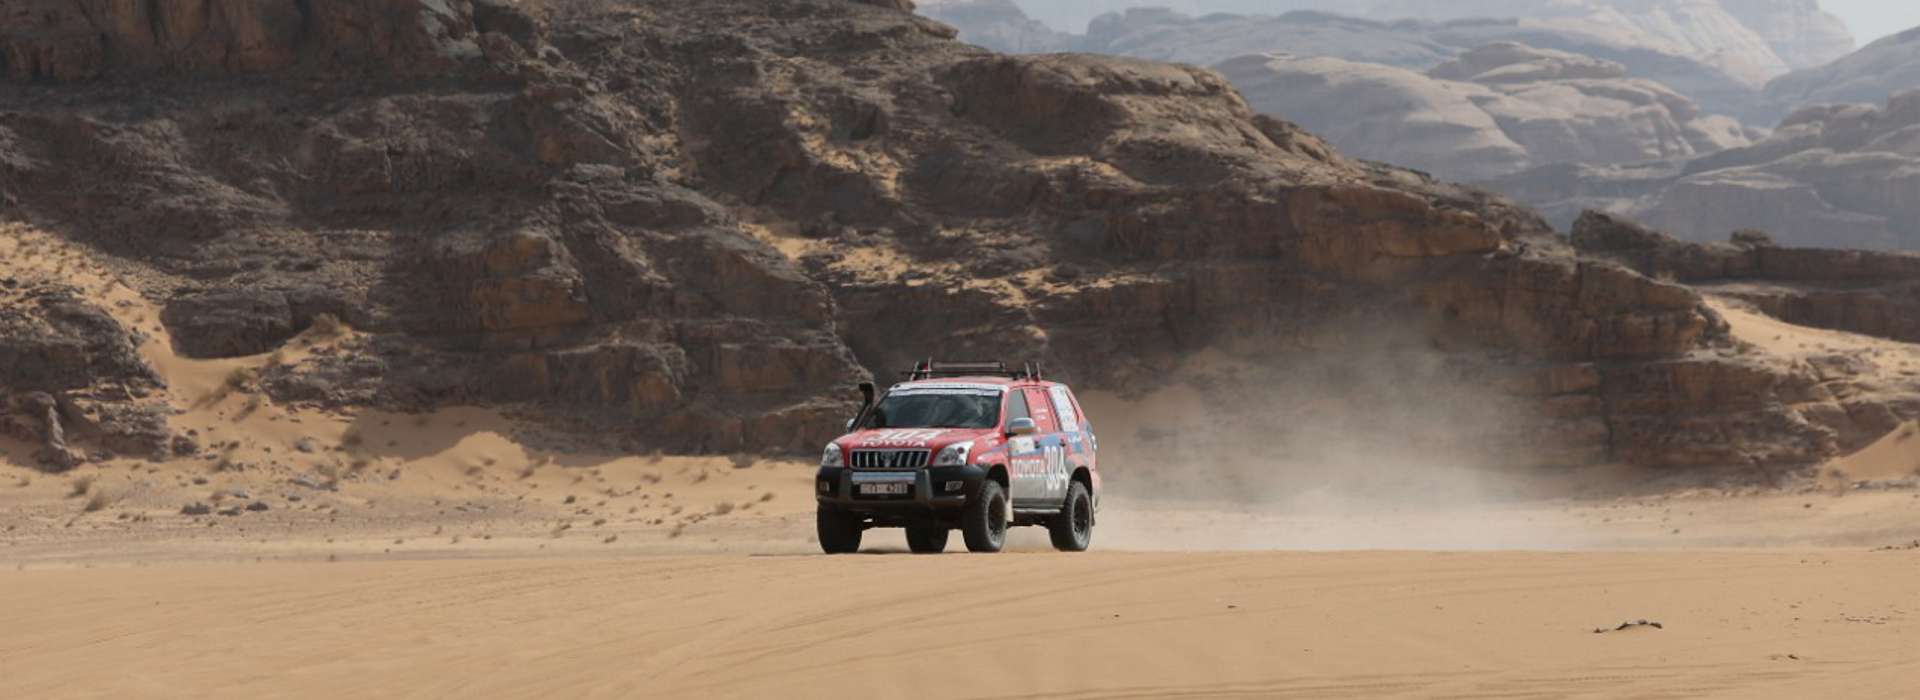 Jordan Baja 2019: Jordan Motorsport announces quality field for Jordan Baja